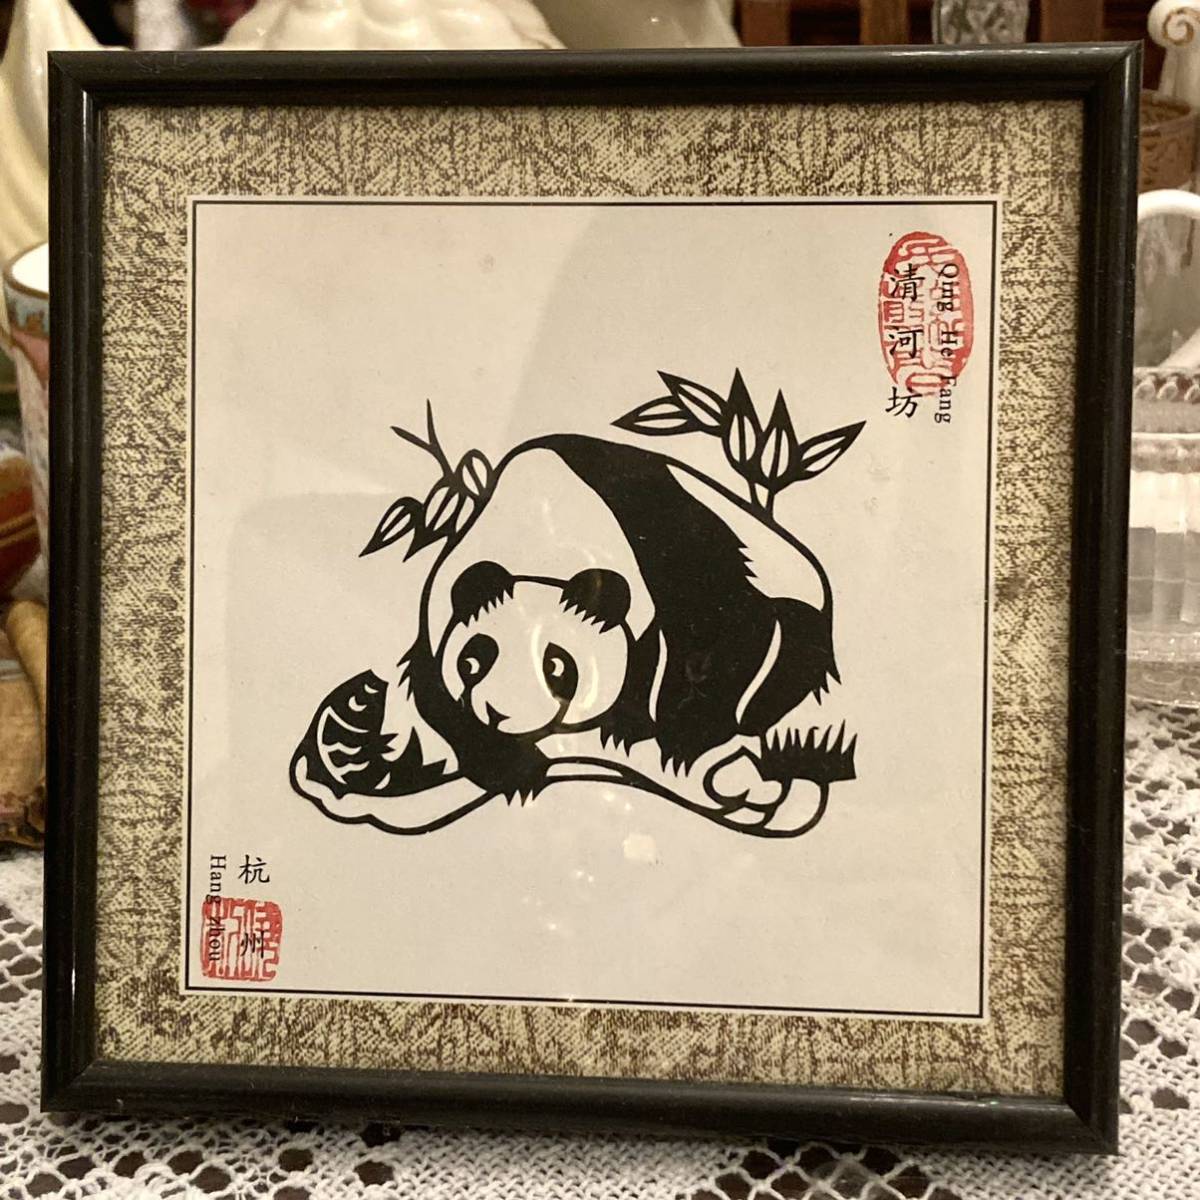 Новая неиспользованная панда, китайская китайская бумага для резки, миниатюрная картина ручной работы, ремесло в рамке, предмет E, произведение искусства, рисование, Хирие, Кирие